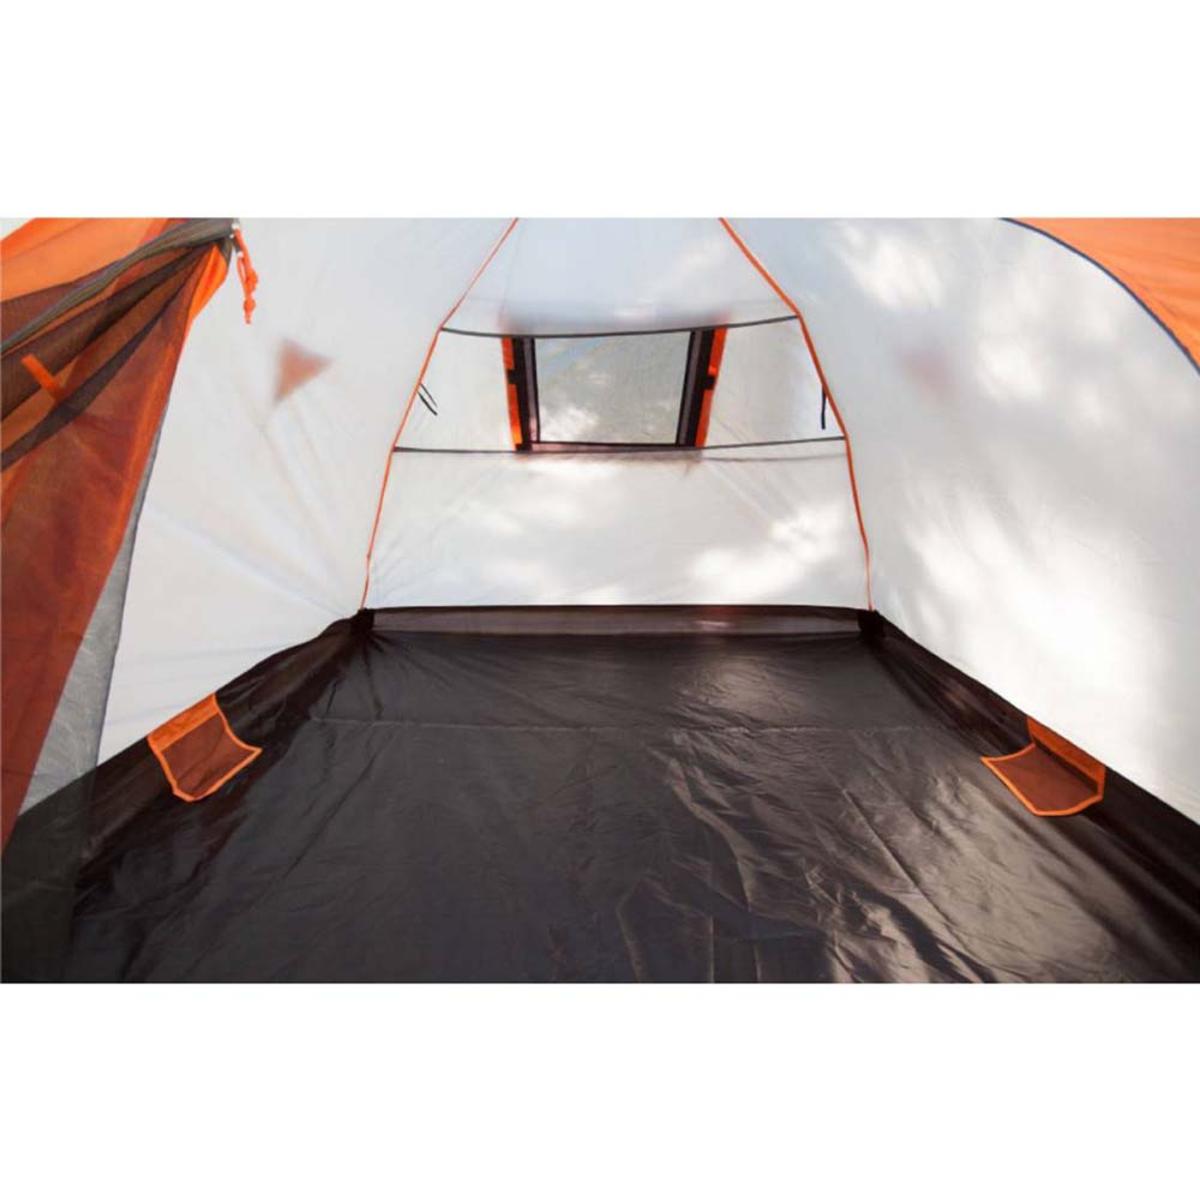 KUMA Outdoor Gear Bear Den 5 Tent - Graphite/Orange